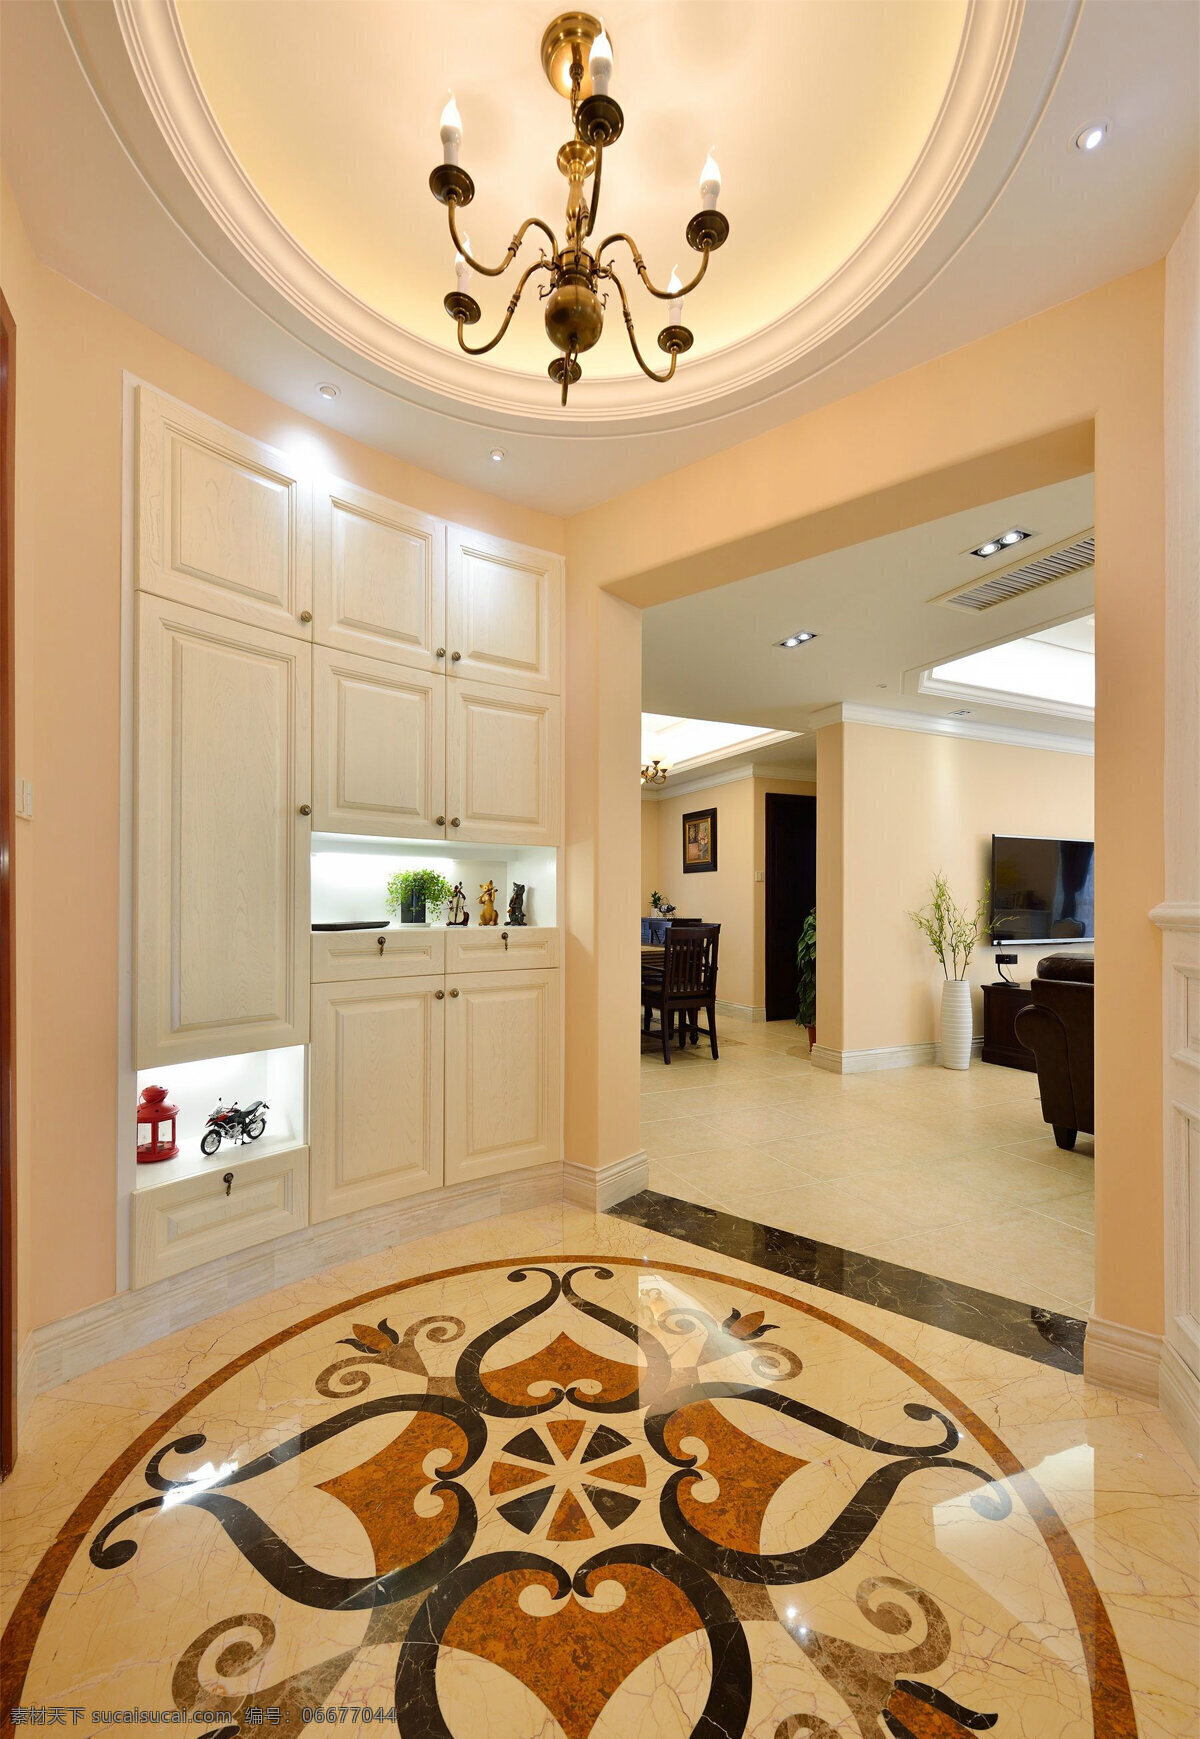 现代 时尚 客厅 花纹 地板 室内装修 效果图 客厅装修 瓷砖地板 白色背景墙 褐色吊灯